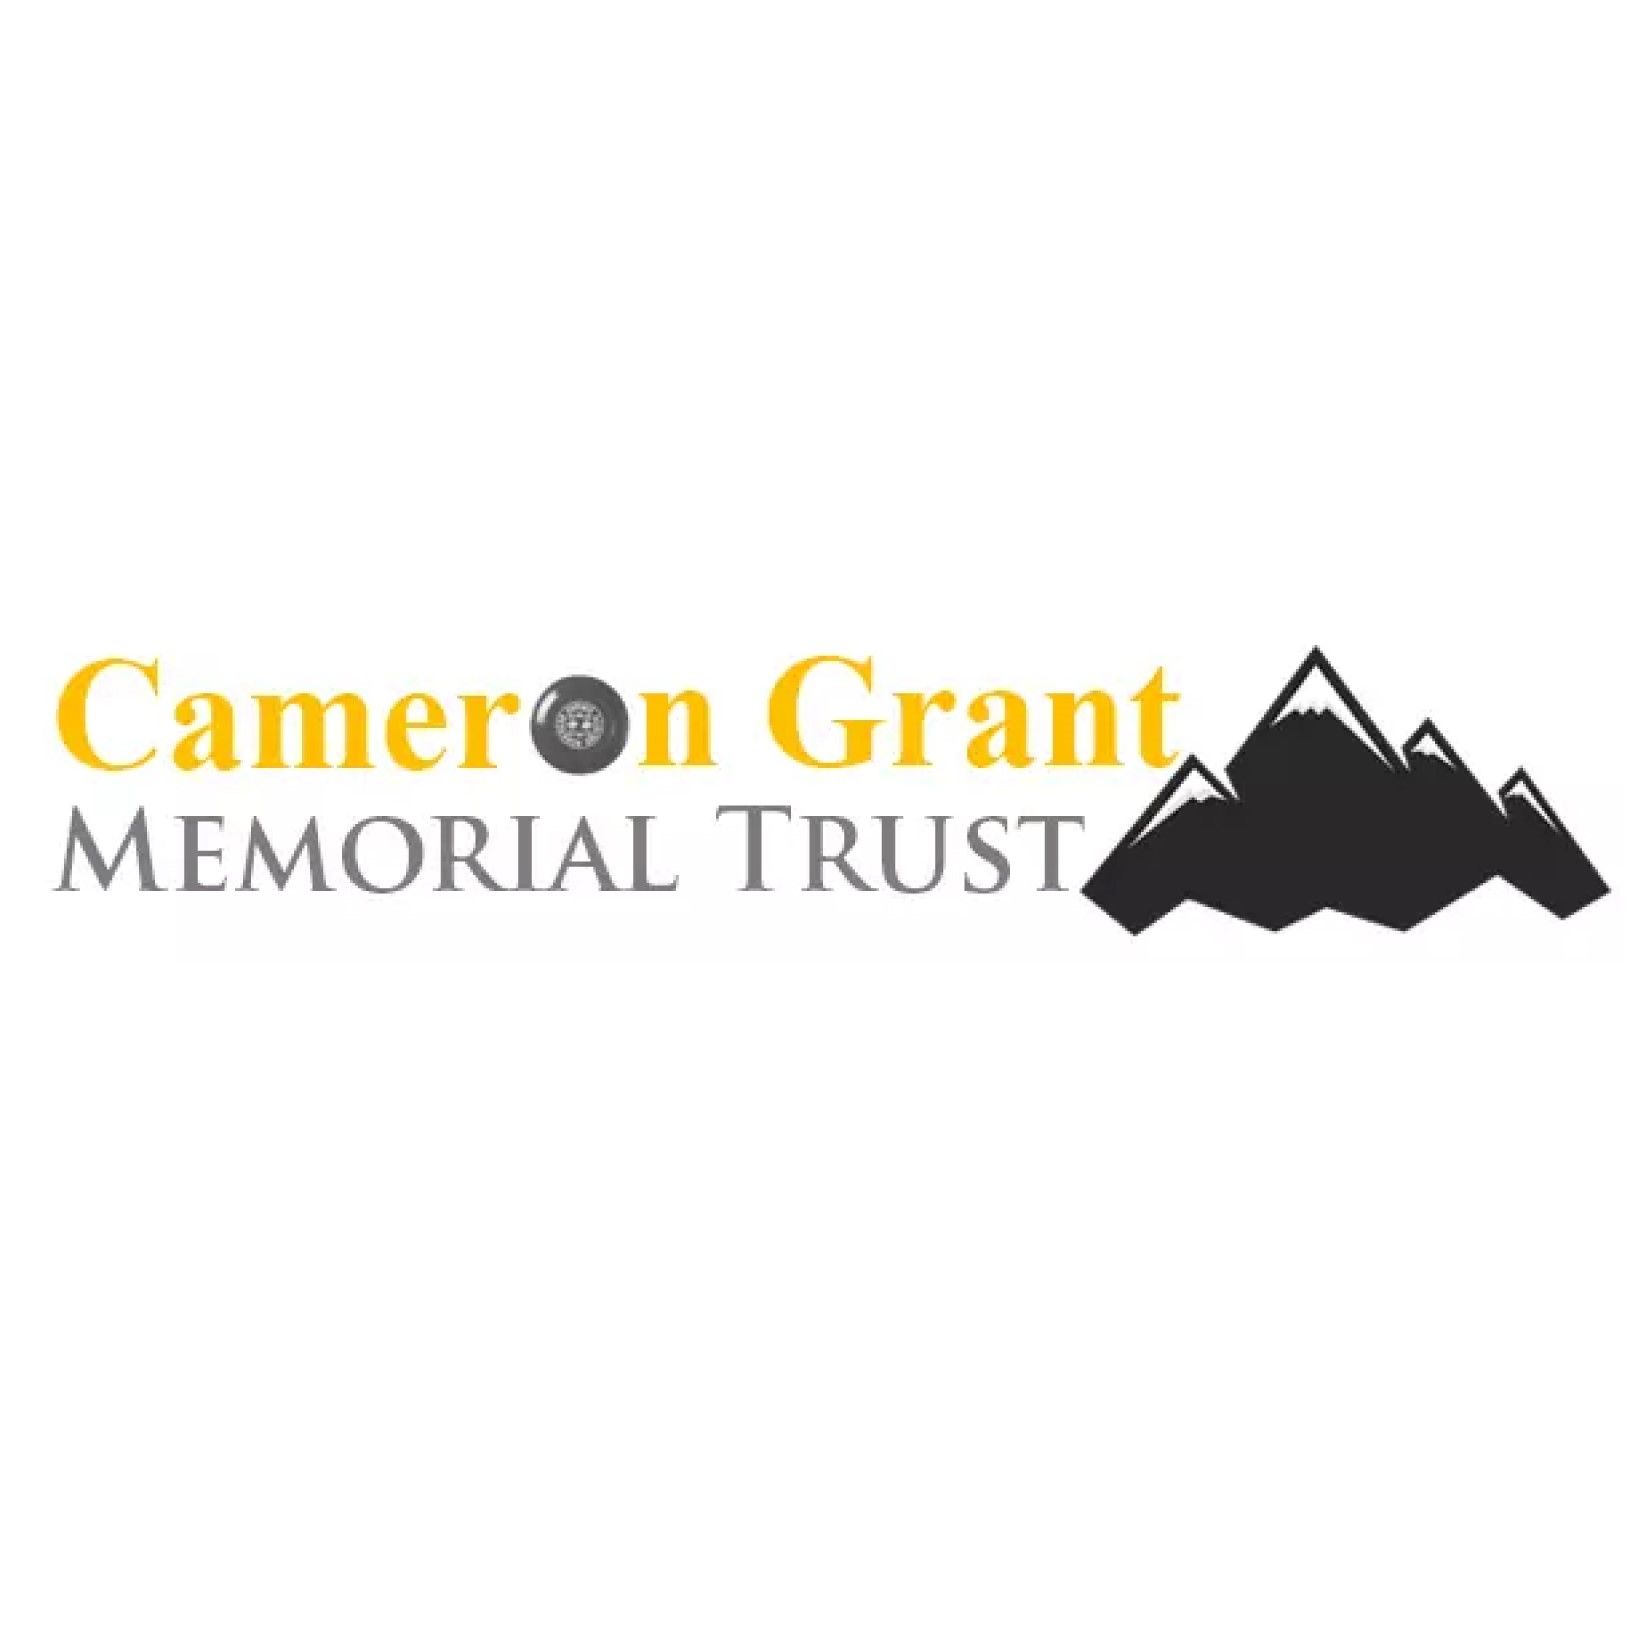 Cameron Grant Memorial Trust square logo